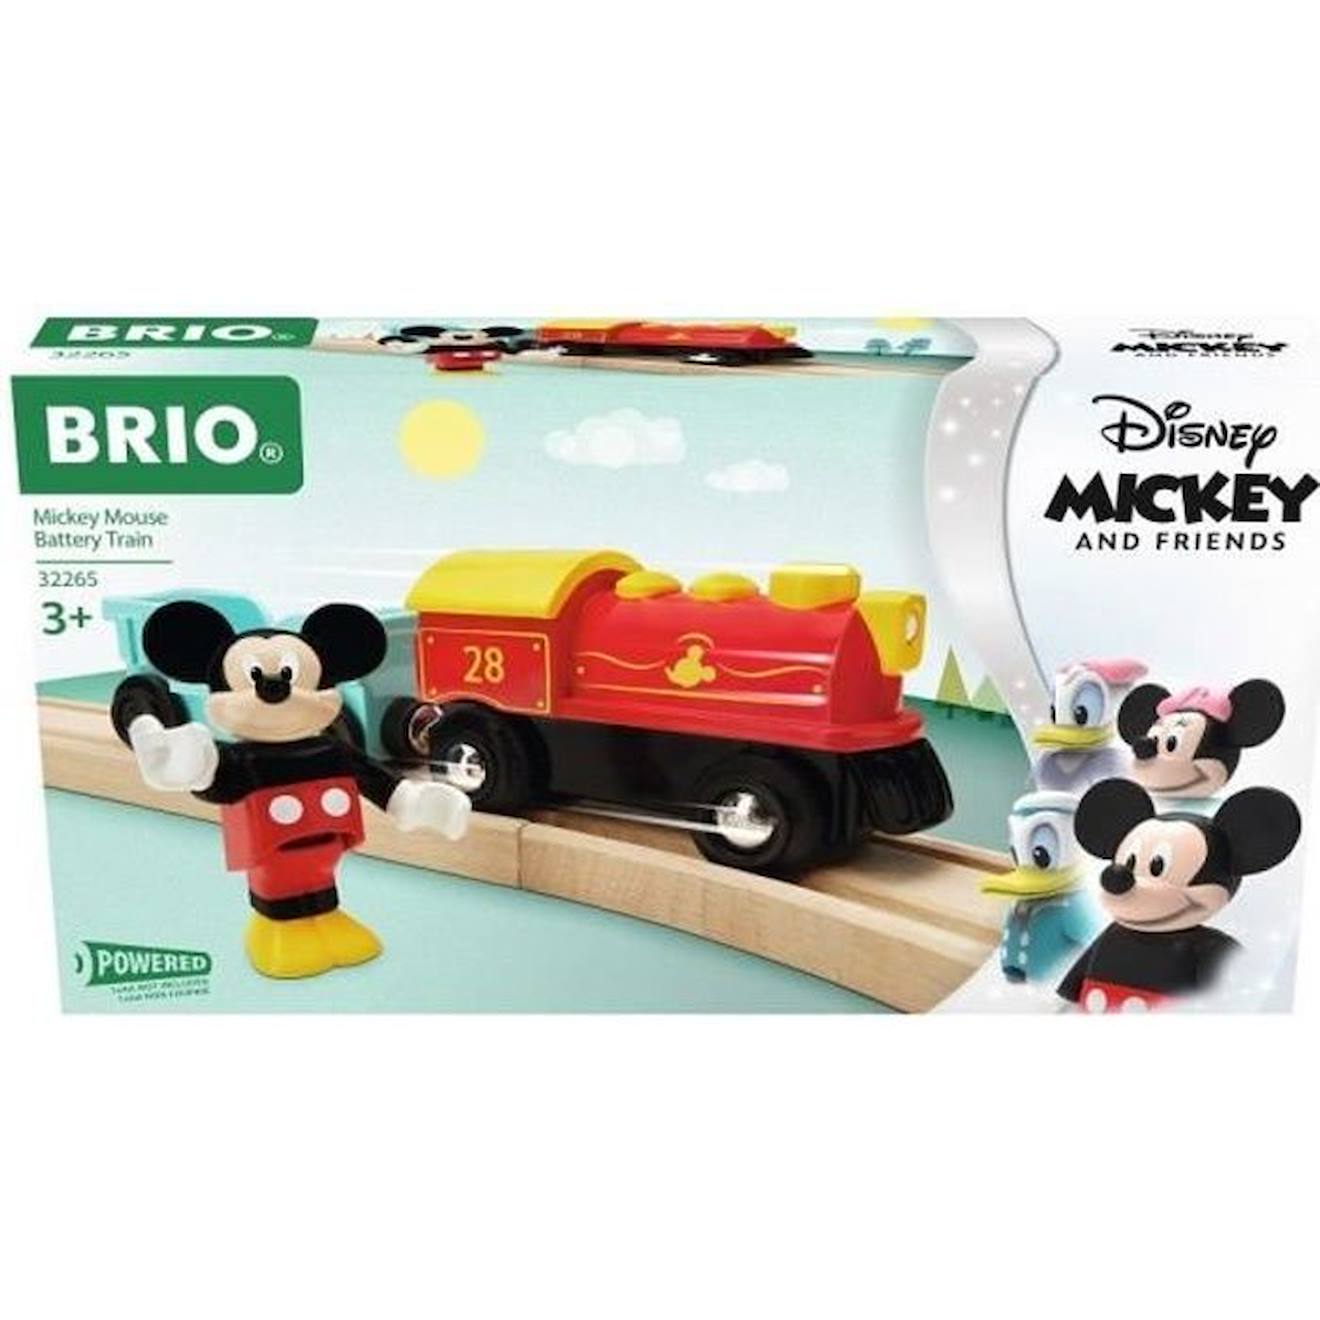 Train à pile Mickey Mouse - BRIO - Ravensburger - Dès 3 ans - 32265 rouge -  Brio